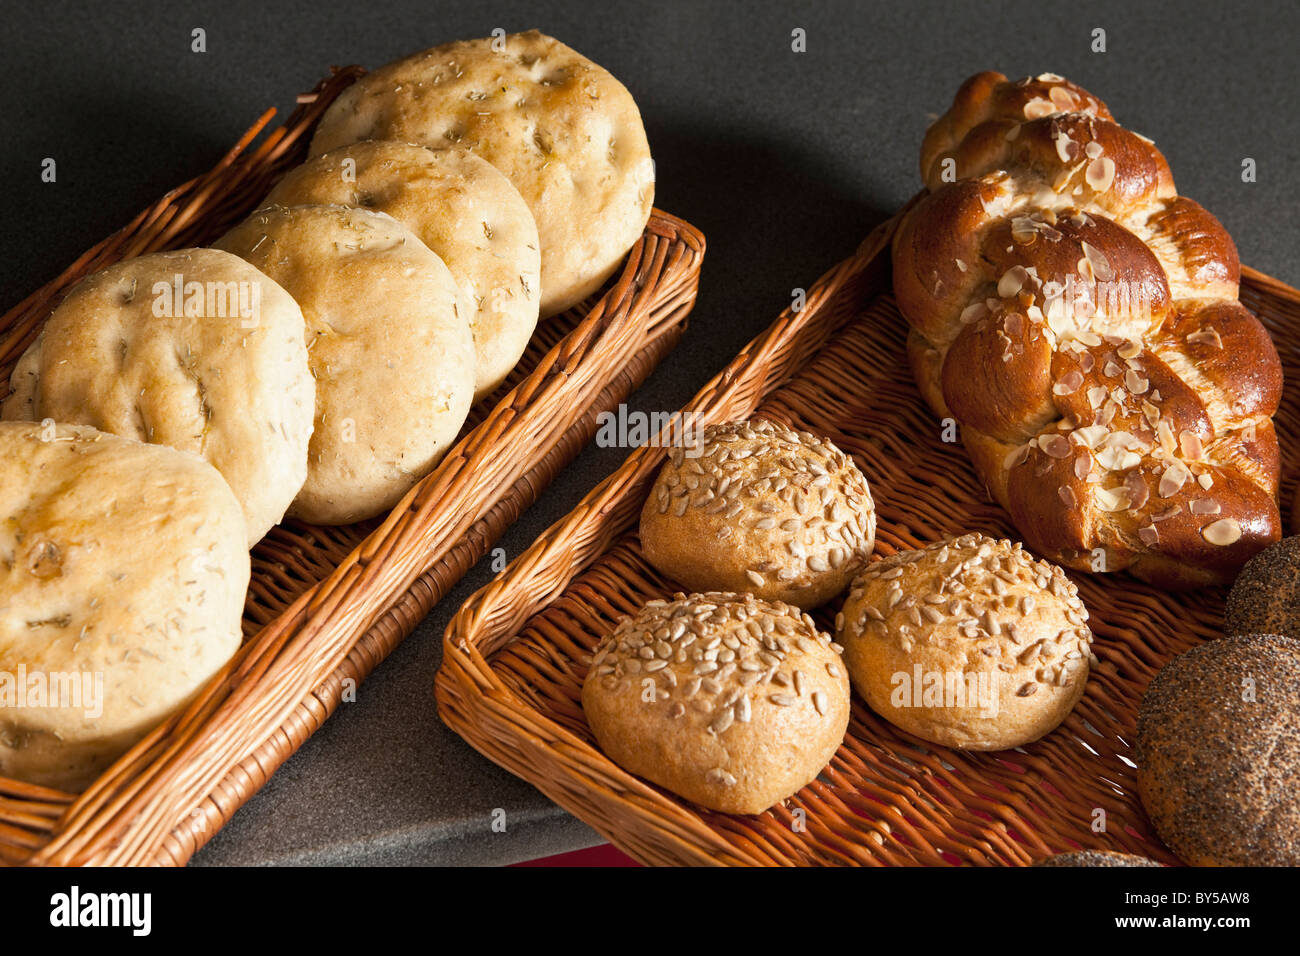 La variété de pain offerts dans une boulangerie Banque D'Images